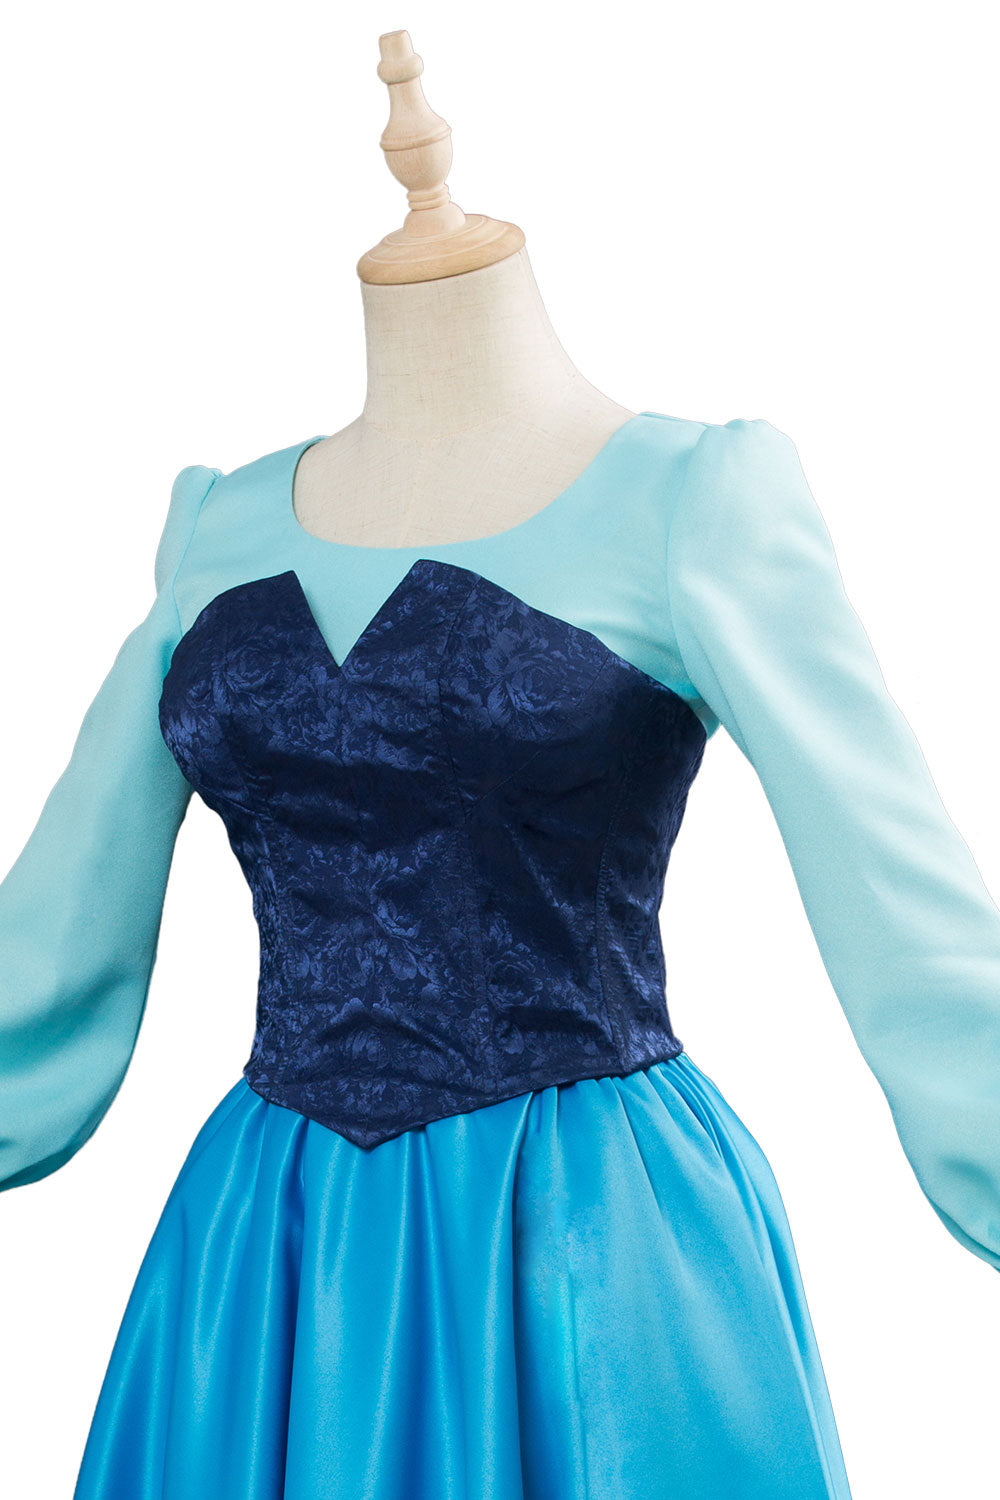 Arielle die Meerjungfrau Kleid The Little Mermaid Dress Cosplay Kostüm Blau Kleid